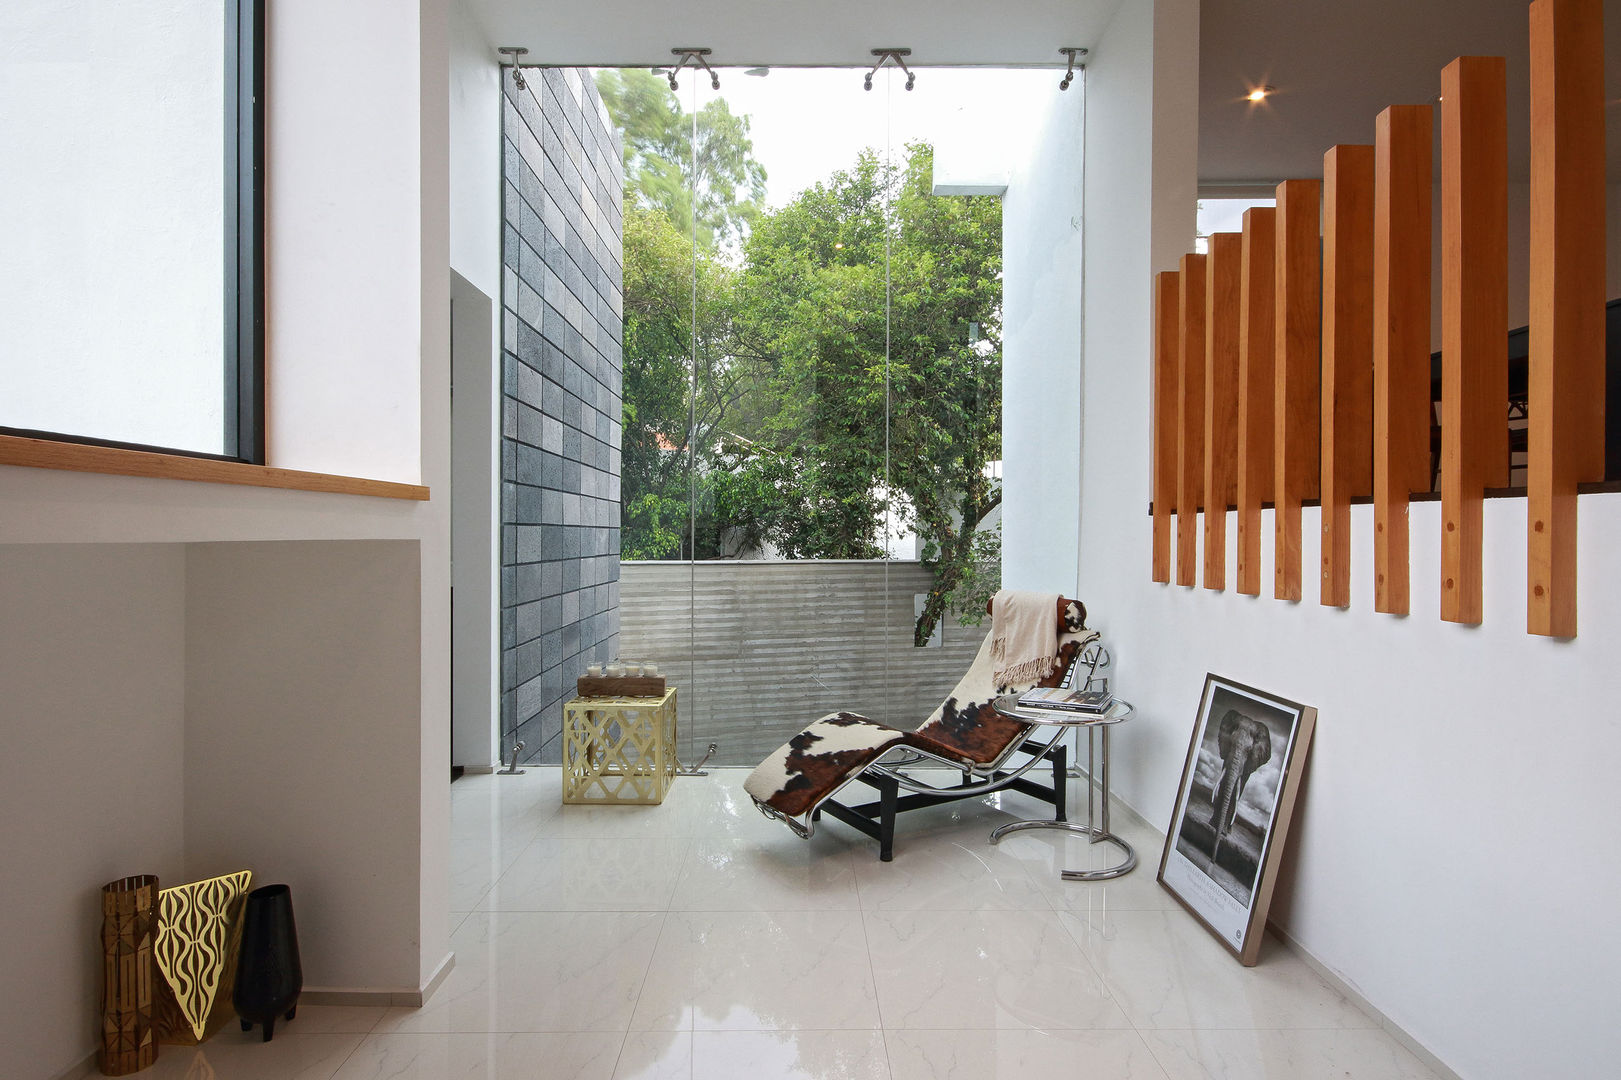 Ampliación de casa en Ciudad de Mexico - Casa BG, All Arquitectura All Arquitectura Minimalist corridor, hallway & stairs Glass